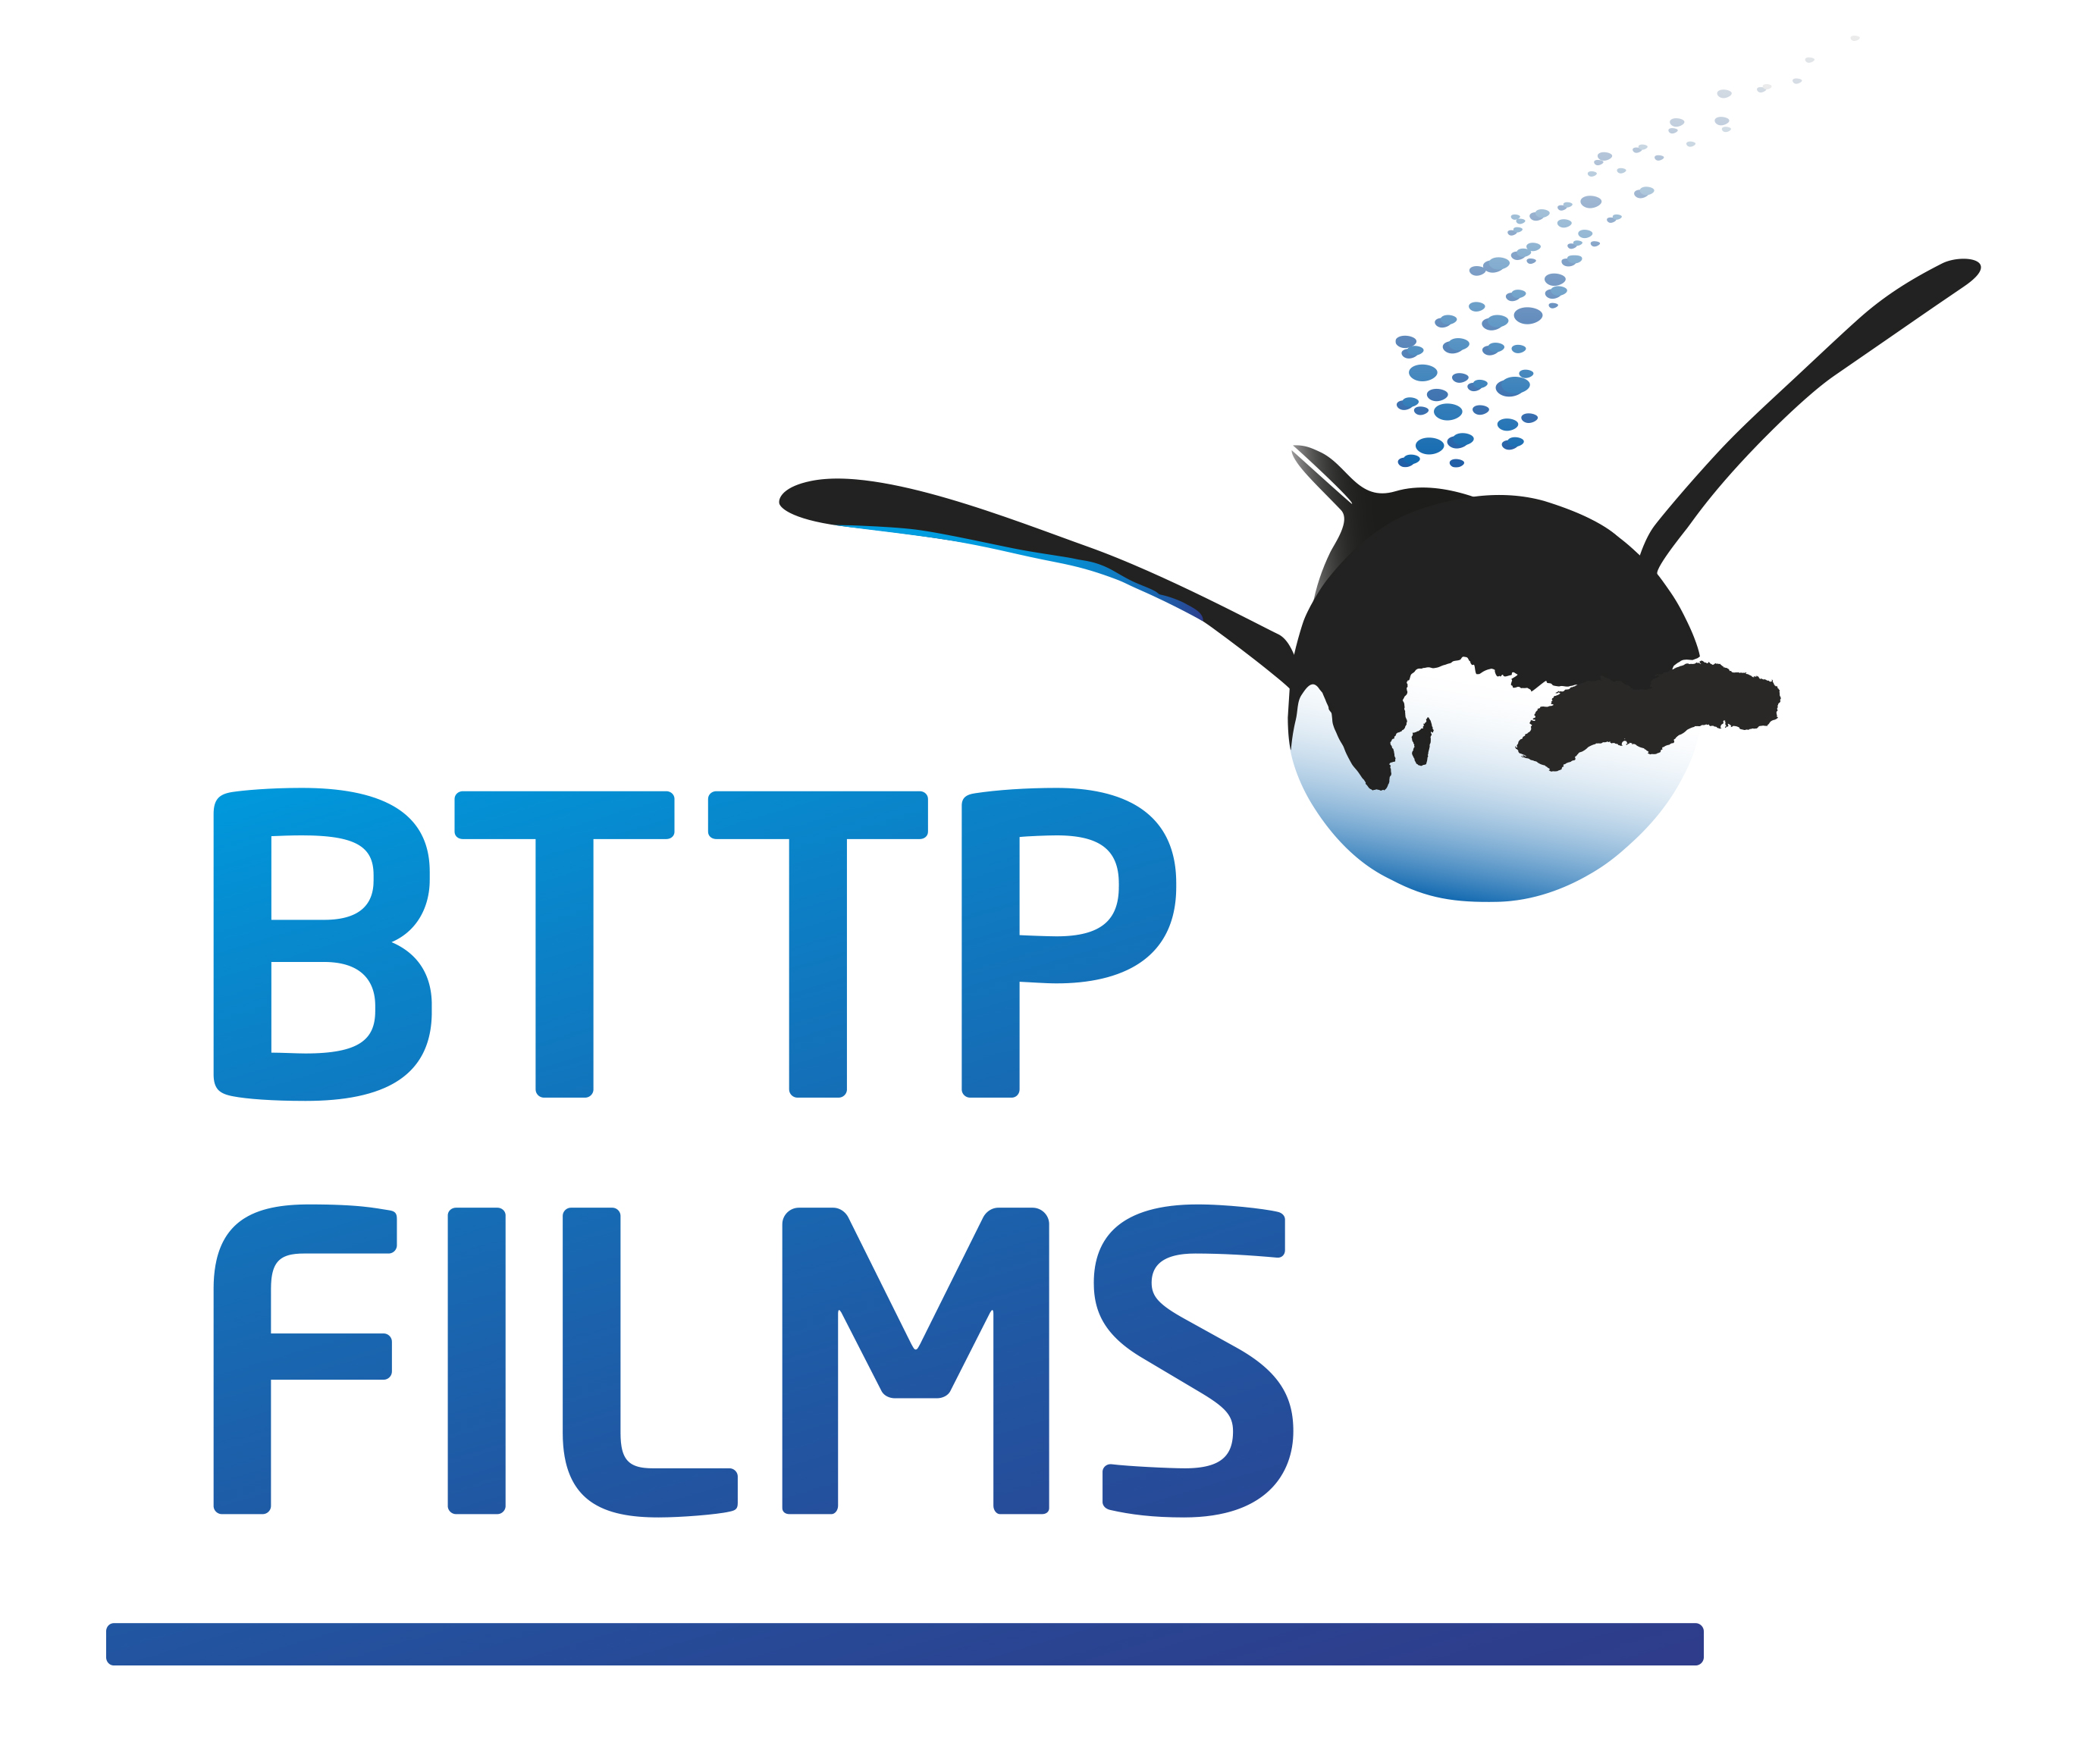 BTTP Films